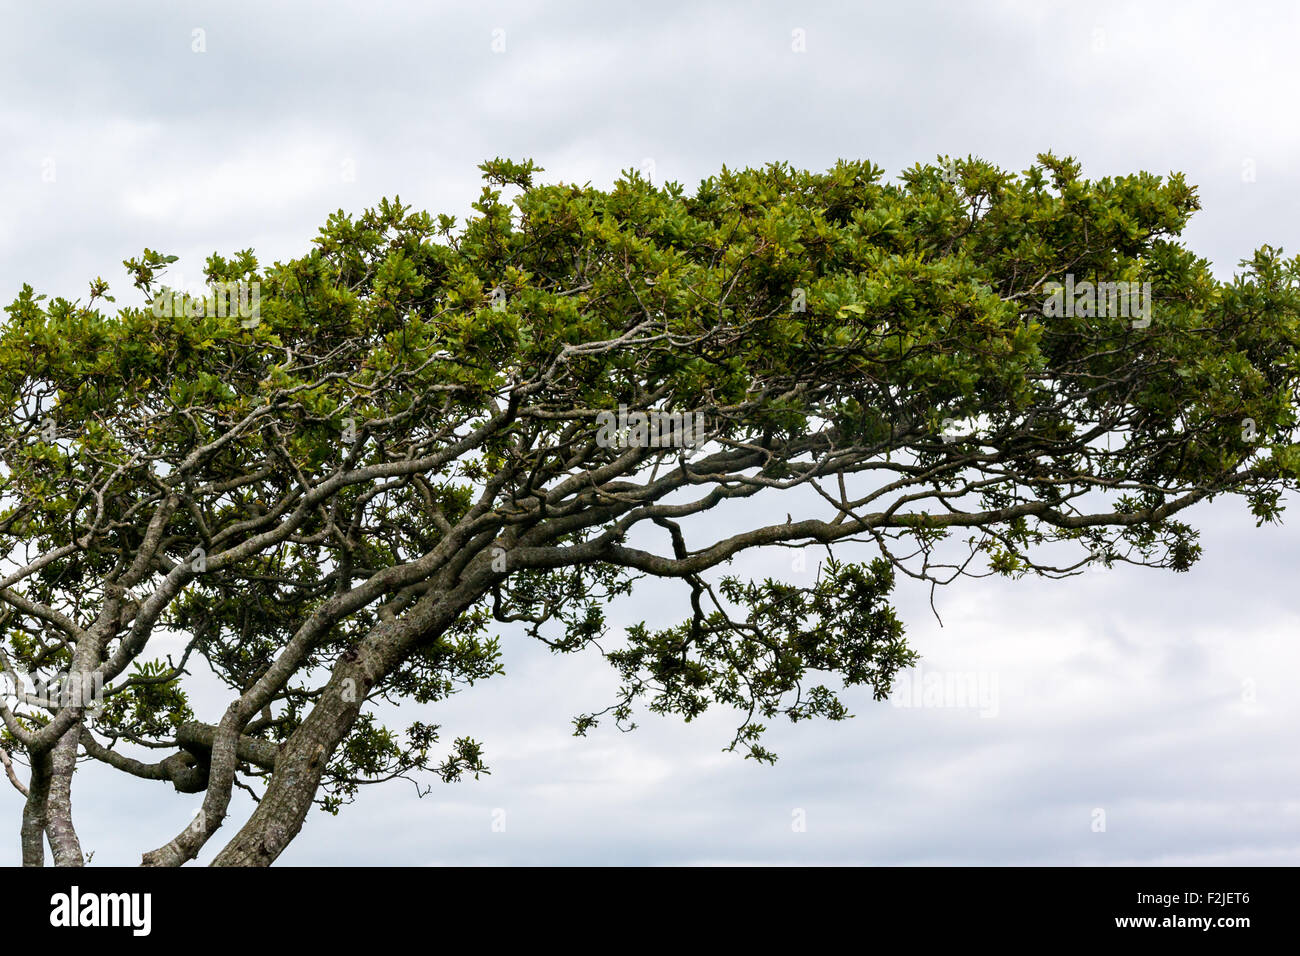 Haut de l'arbre exposée au vent contre un ciel nuageux Banque D'Images